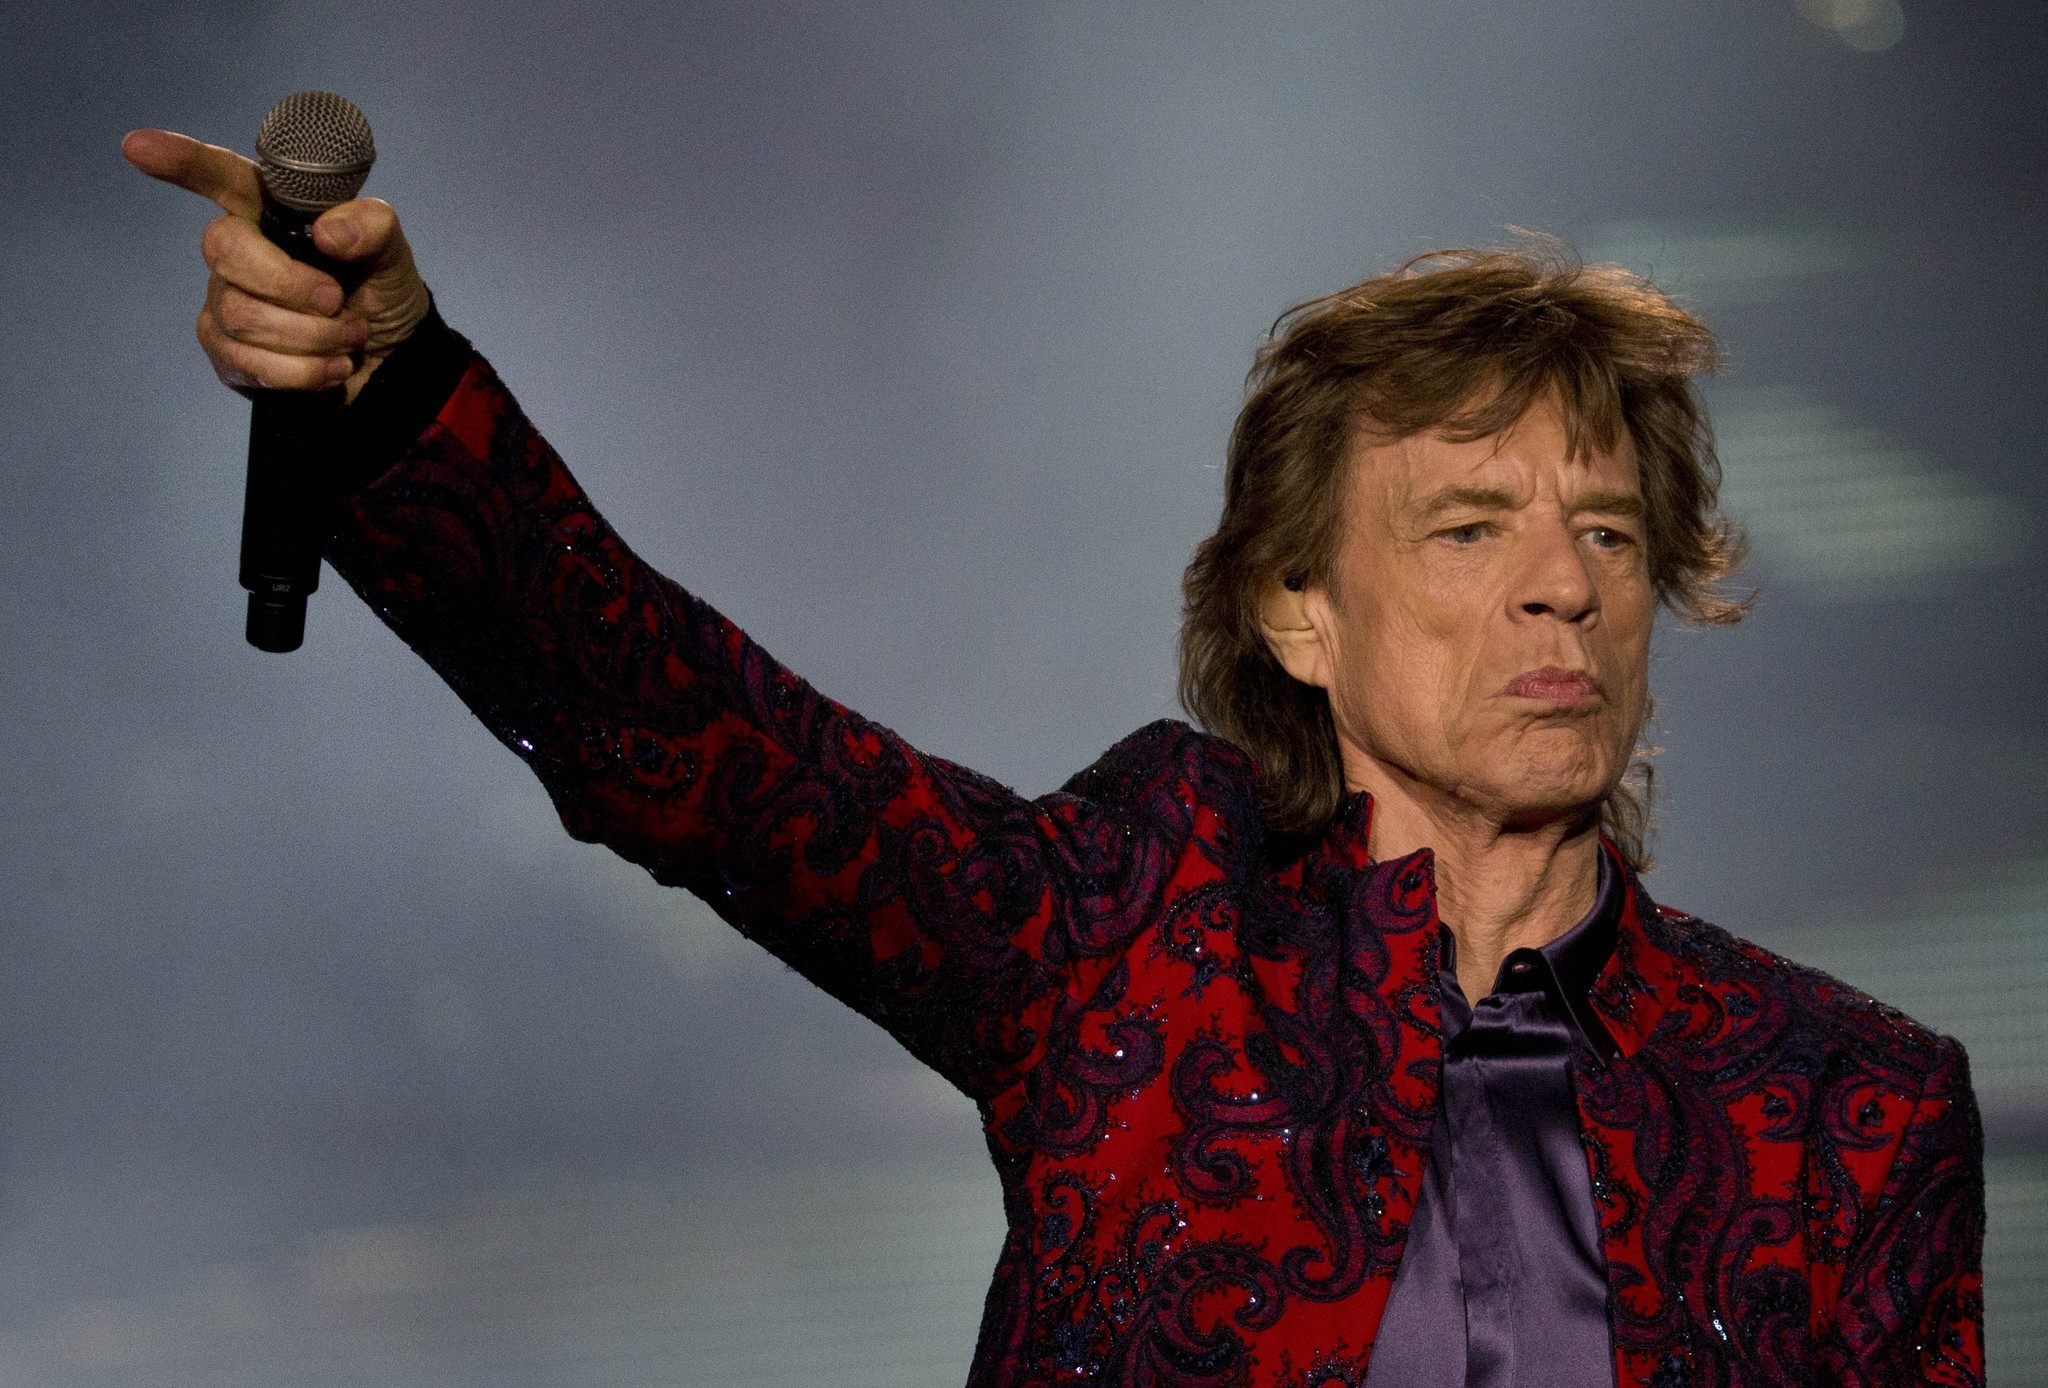 OMG! Rolling Stones își amână turneul! Mick Jagger va fi operat la inimă